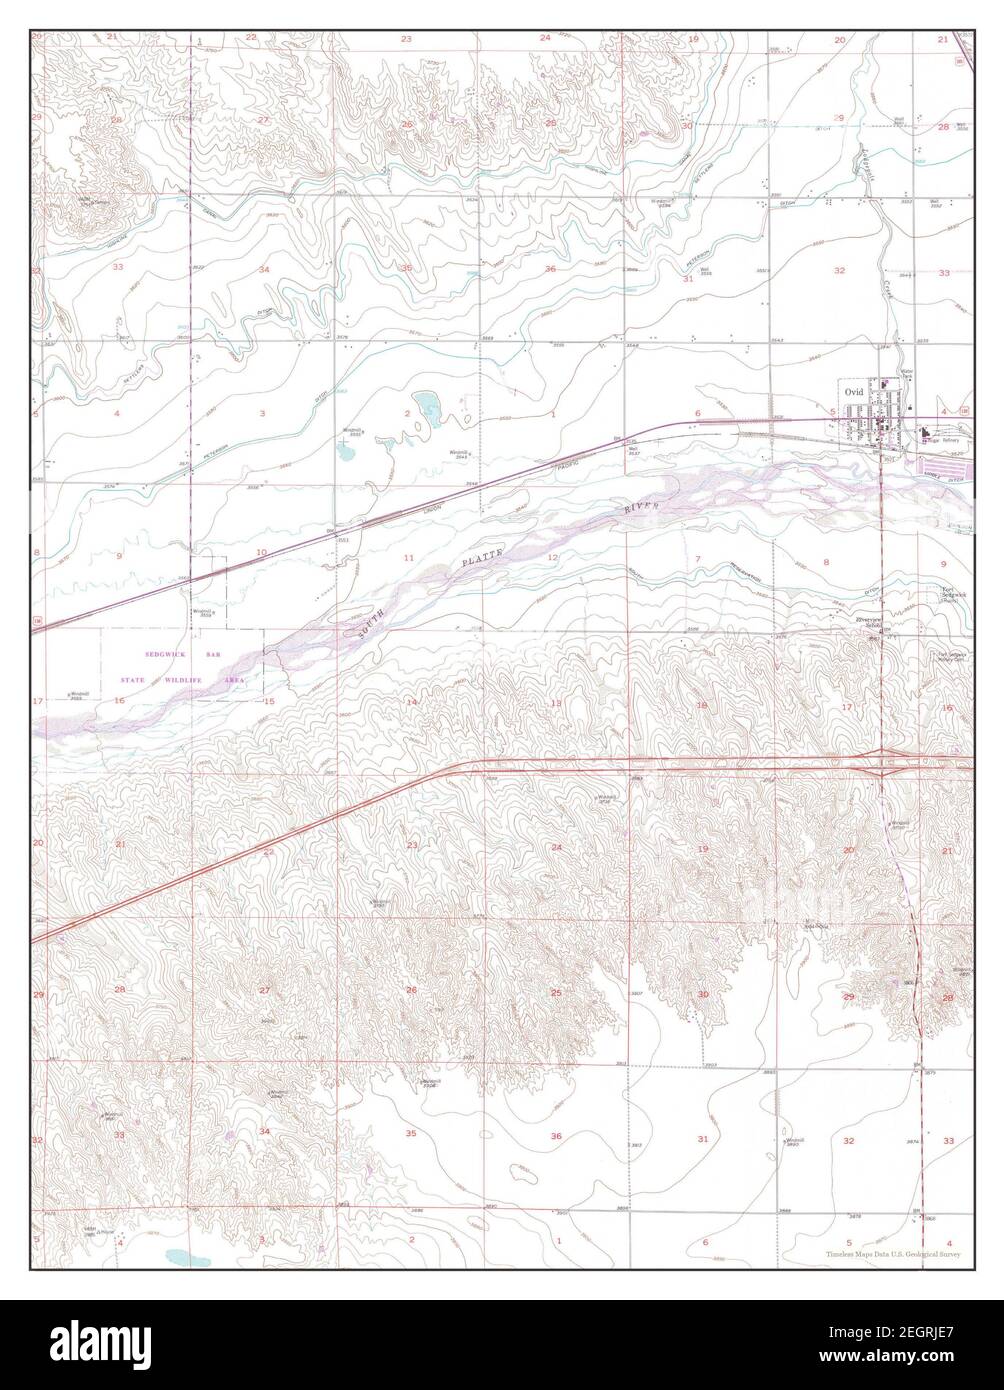 Ovid, Colorado, carte 1953, 1:24000, États-Unis d'Amérique par Timeless Maps, données U.S. Geological Survey Banque D'Images